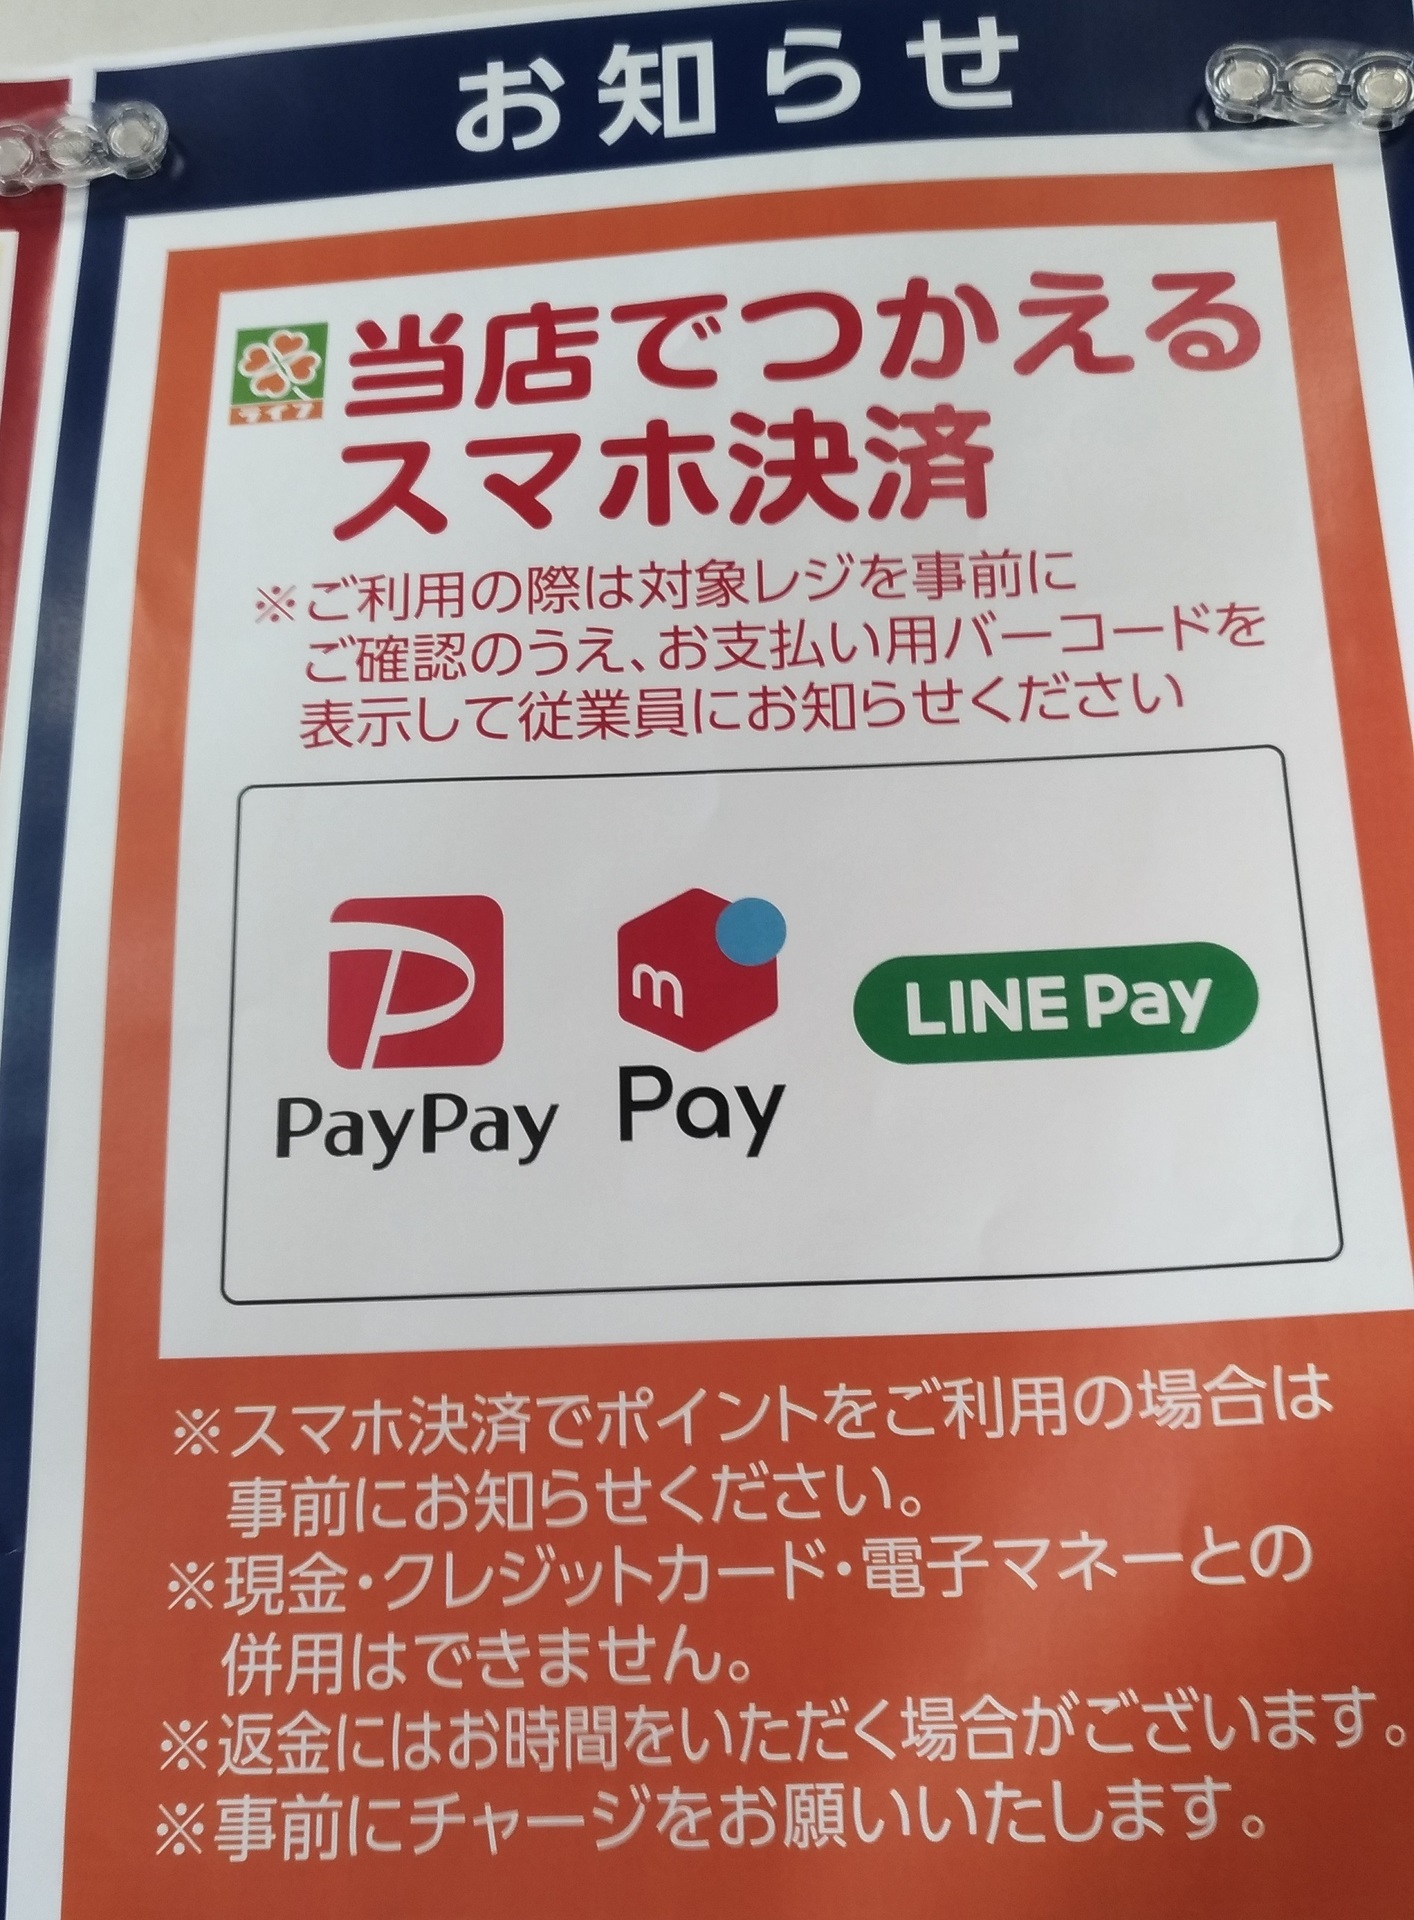 sumaho_PayPay_life_app_.jpg